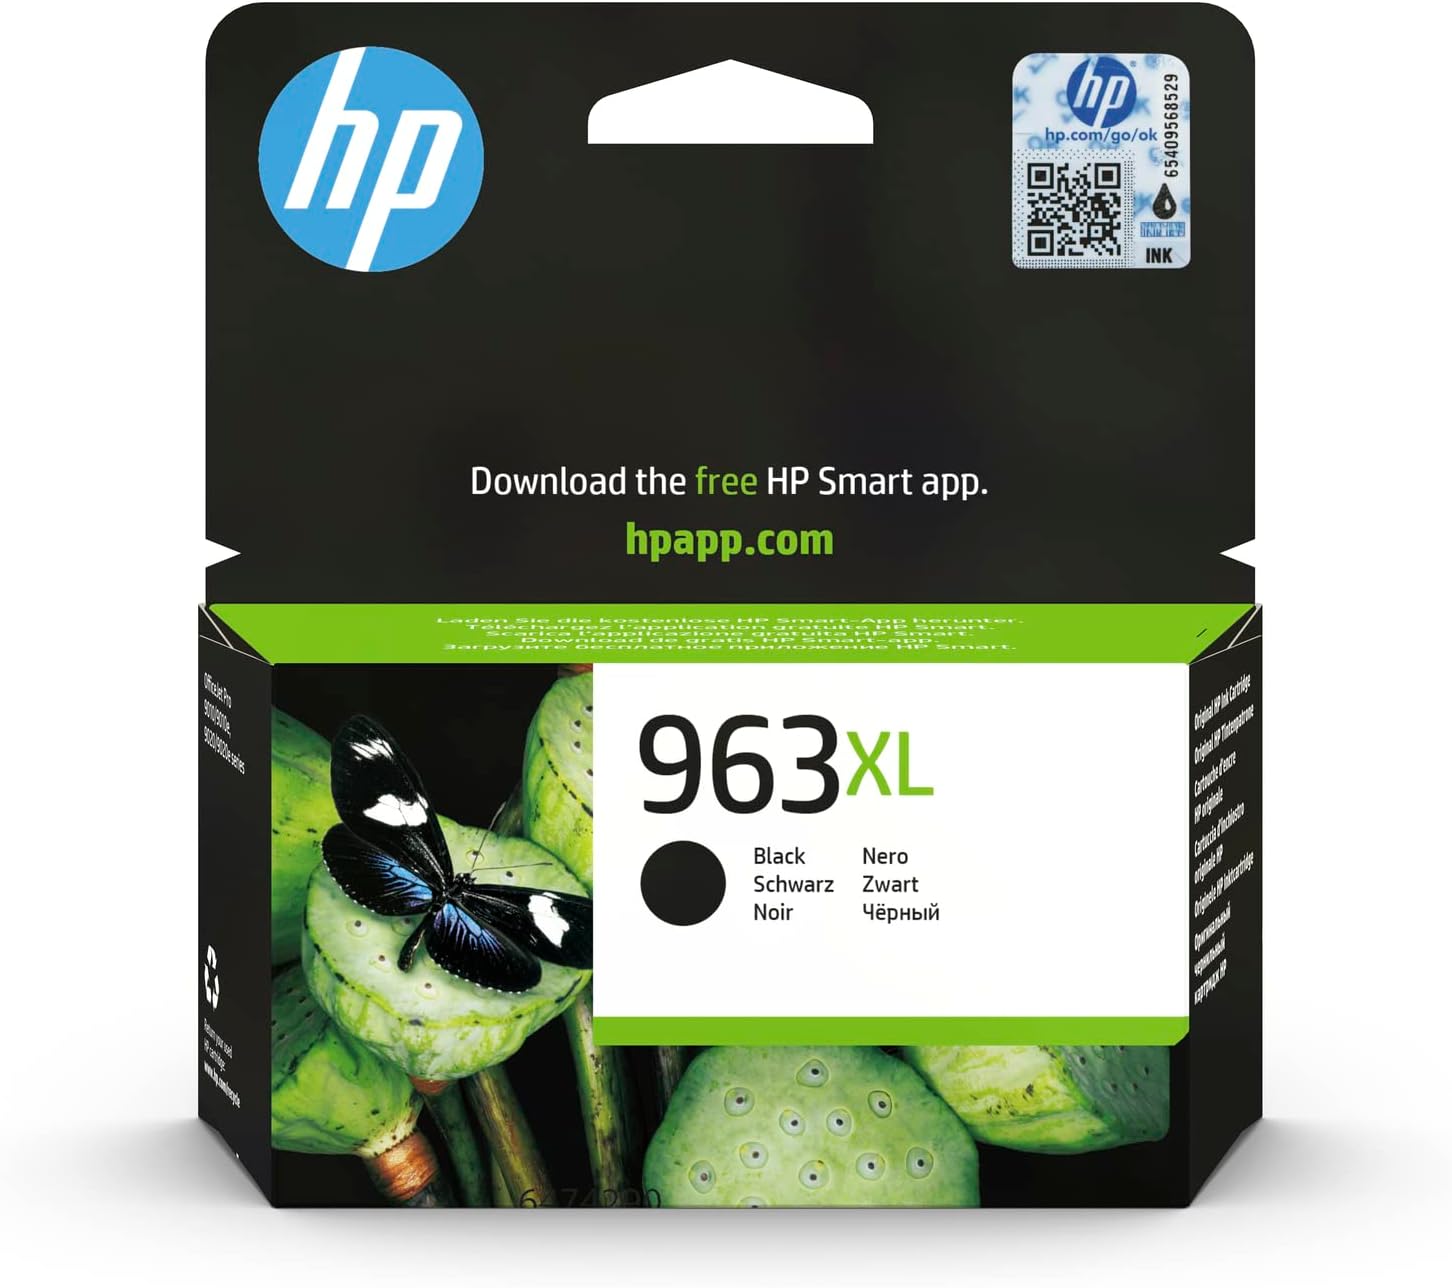 HP 963XL Ink Cartridge for HP Printers, Black - 3JA30AE